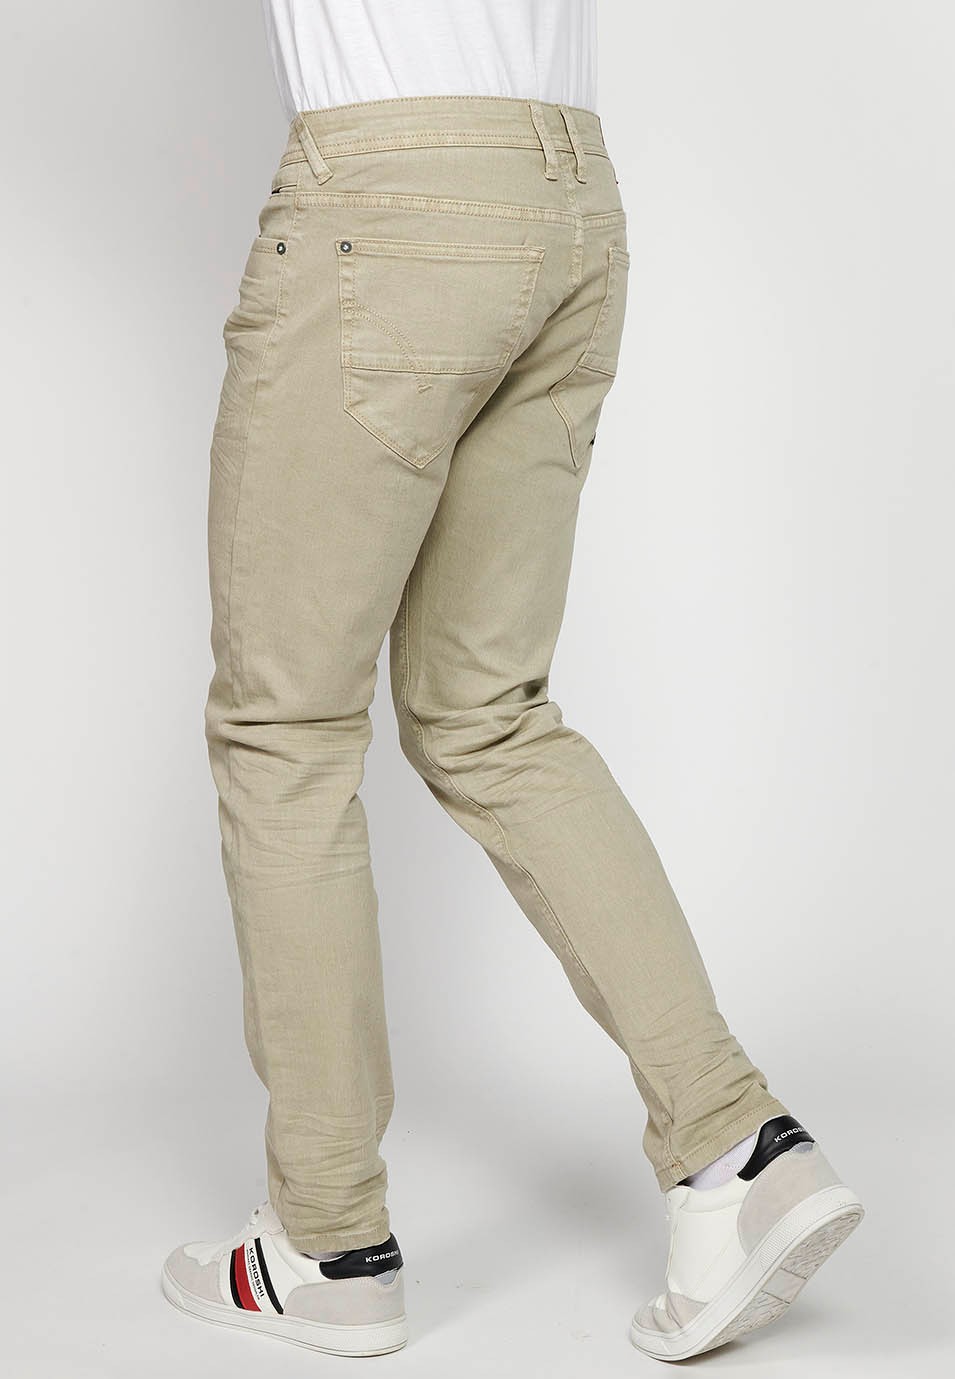 Pantalon long droit coupe classique avec fermeture sur le devant avec fermeture éclair et bouton avec cinq poches, une poche en couleur pierre pour homme 5